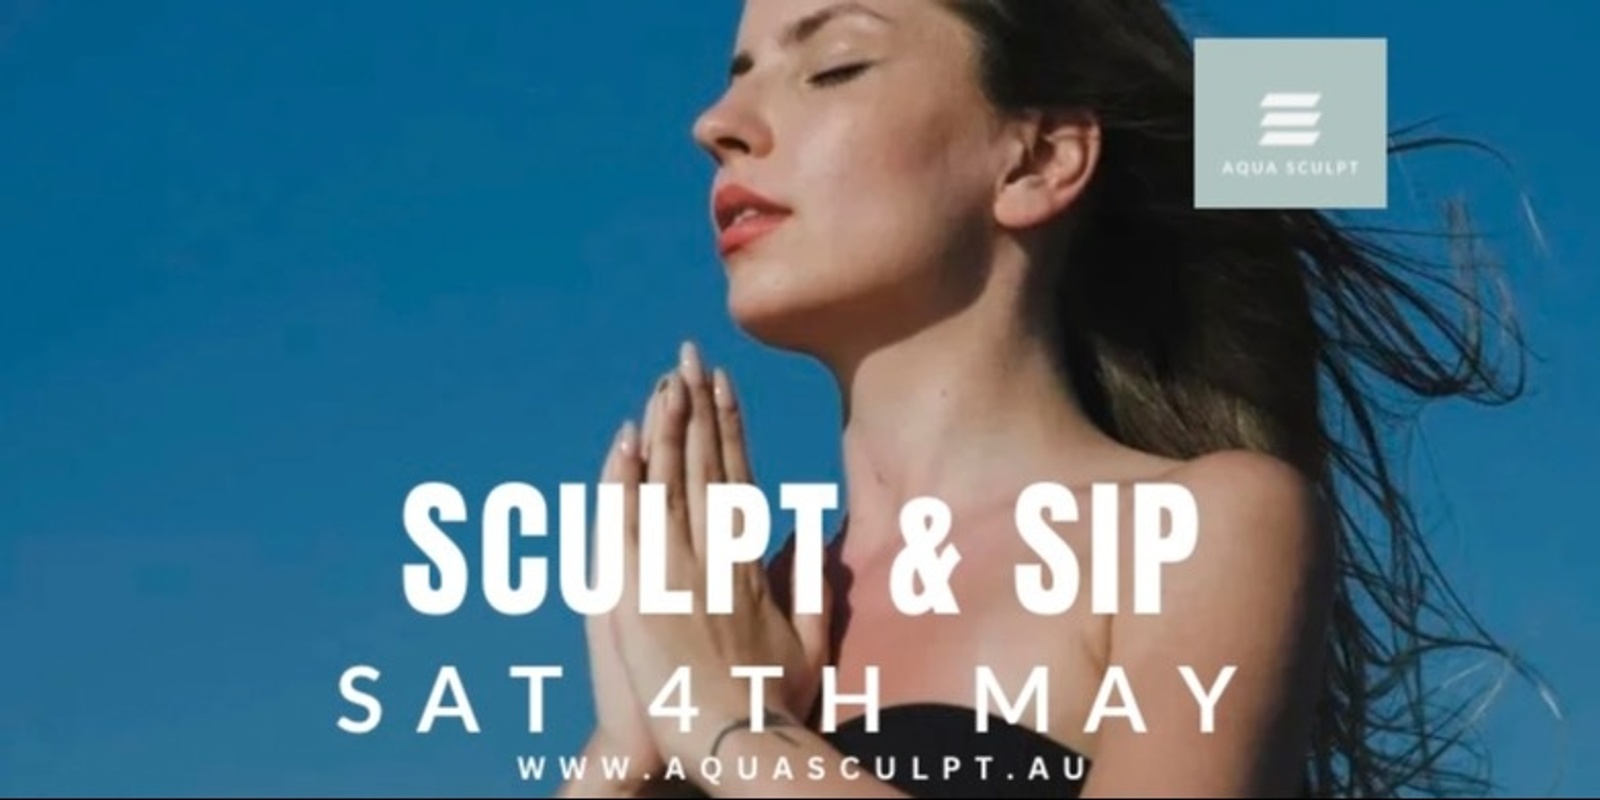 Banner image for Aqua Sculpt - Sip & Sculpt Pilates